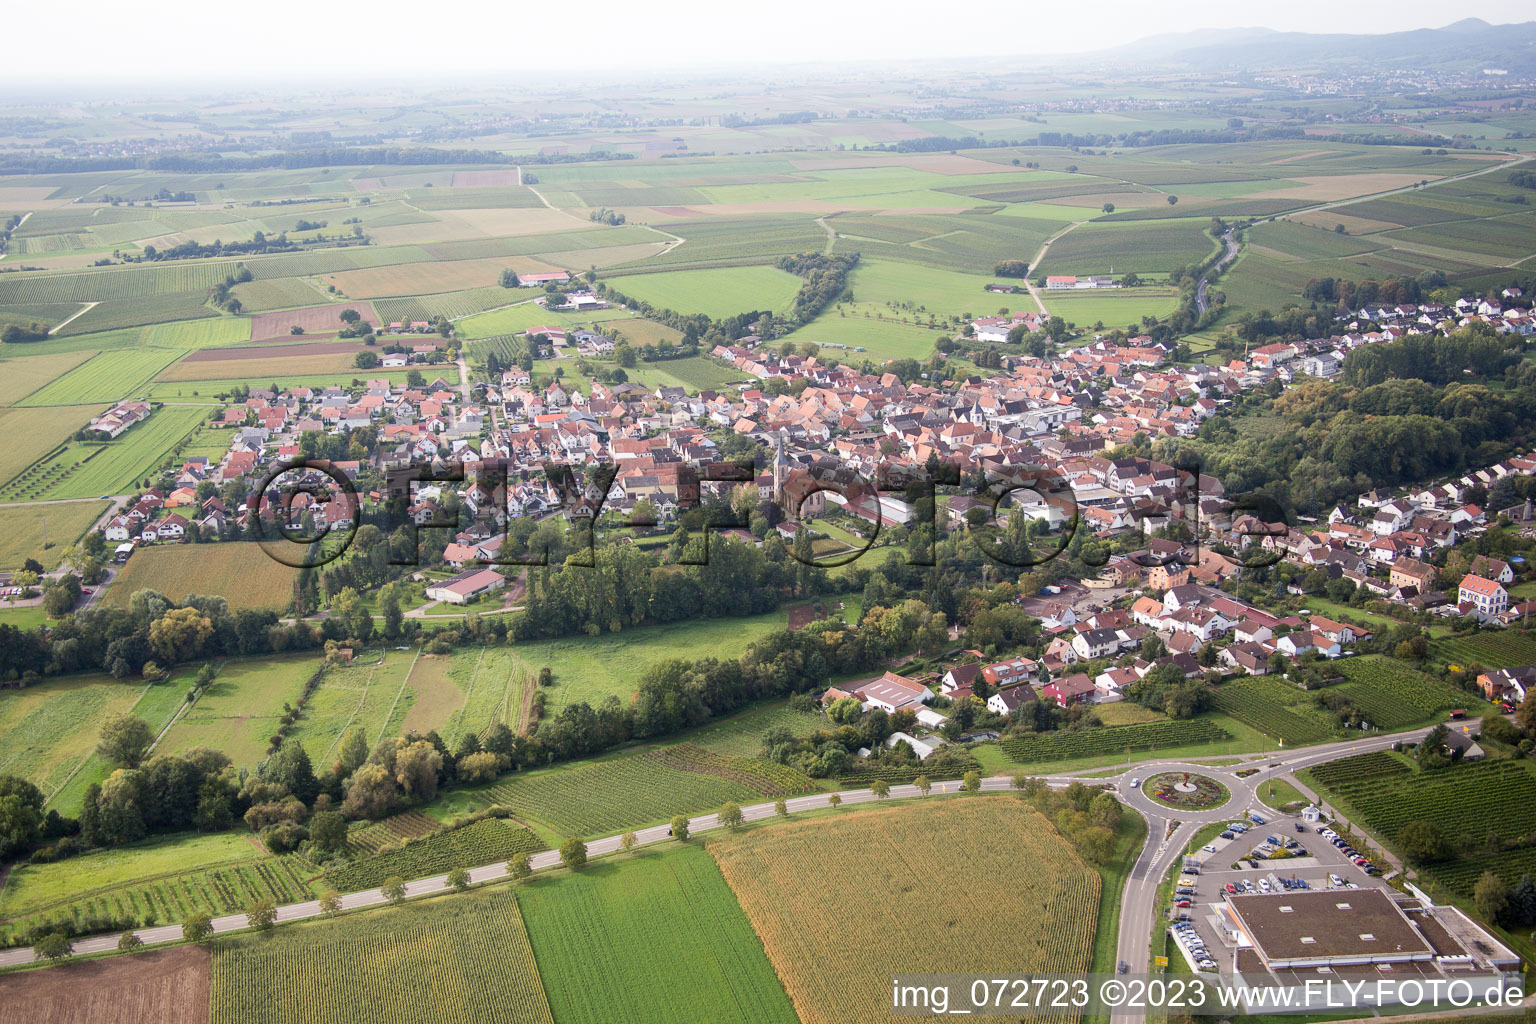 Quartier Appenhofen in Billigheim-Ingenheim dans le département Rhénanie-Palatinat, Allemagne d'en haut